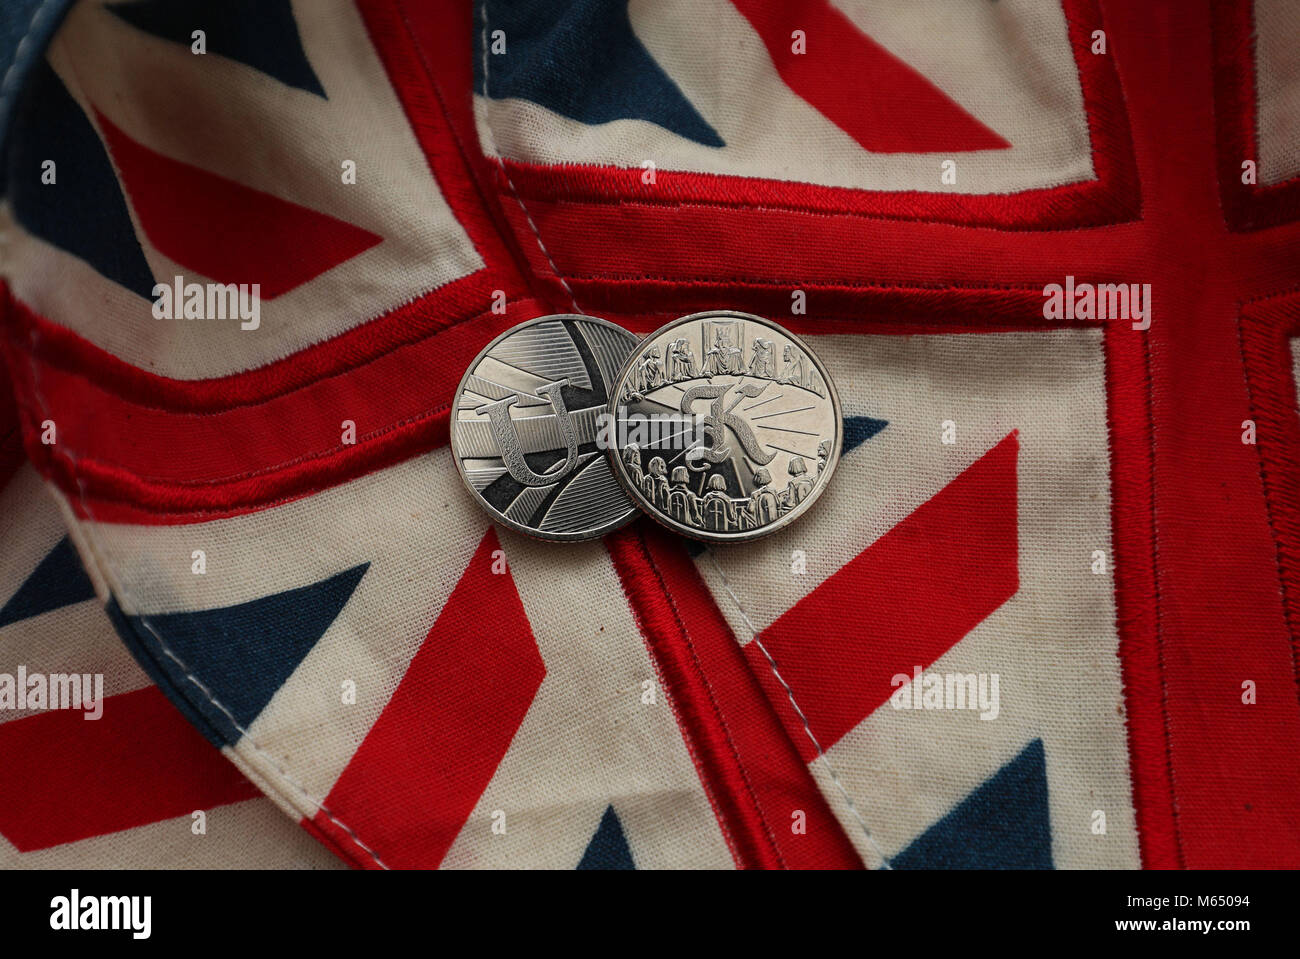 Auf 0001 Embargo Donnerstag 1. März zwei der Royal Mint 26 brandneue 10 Pence Designs, die über dem Land erscheint als Teil der "Große britische Münze Jagd', Feiern, was Großbritannien groß macht. Stockfoto